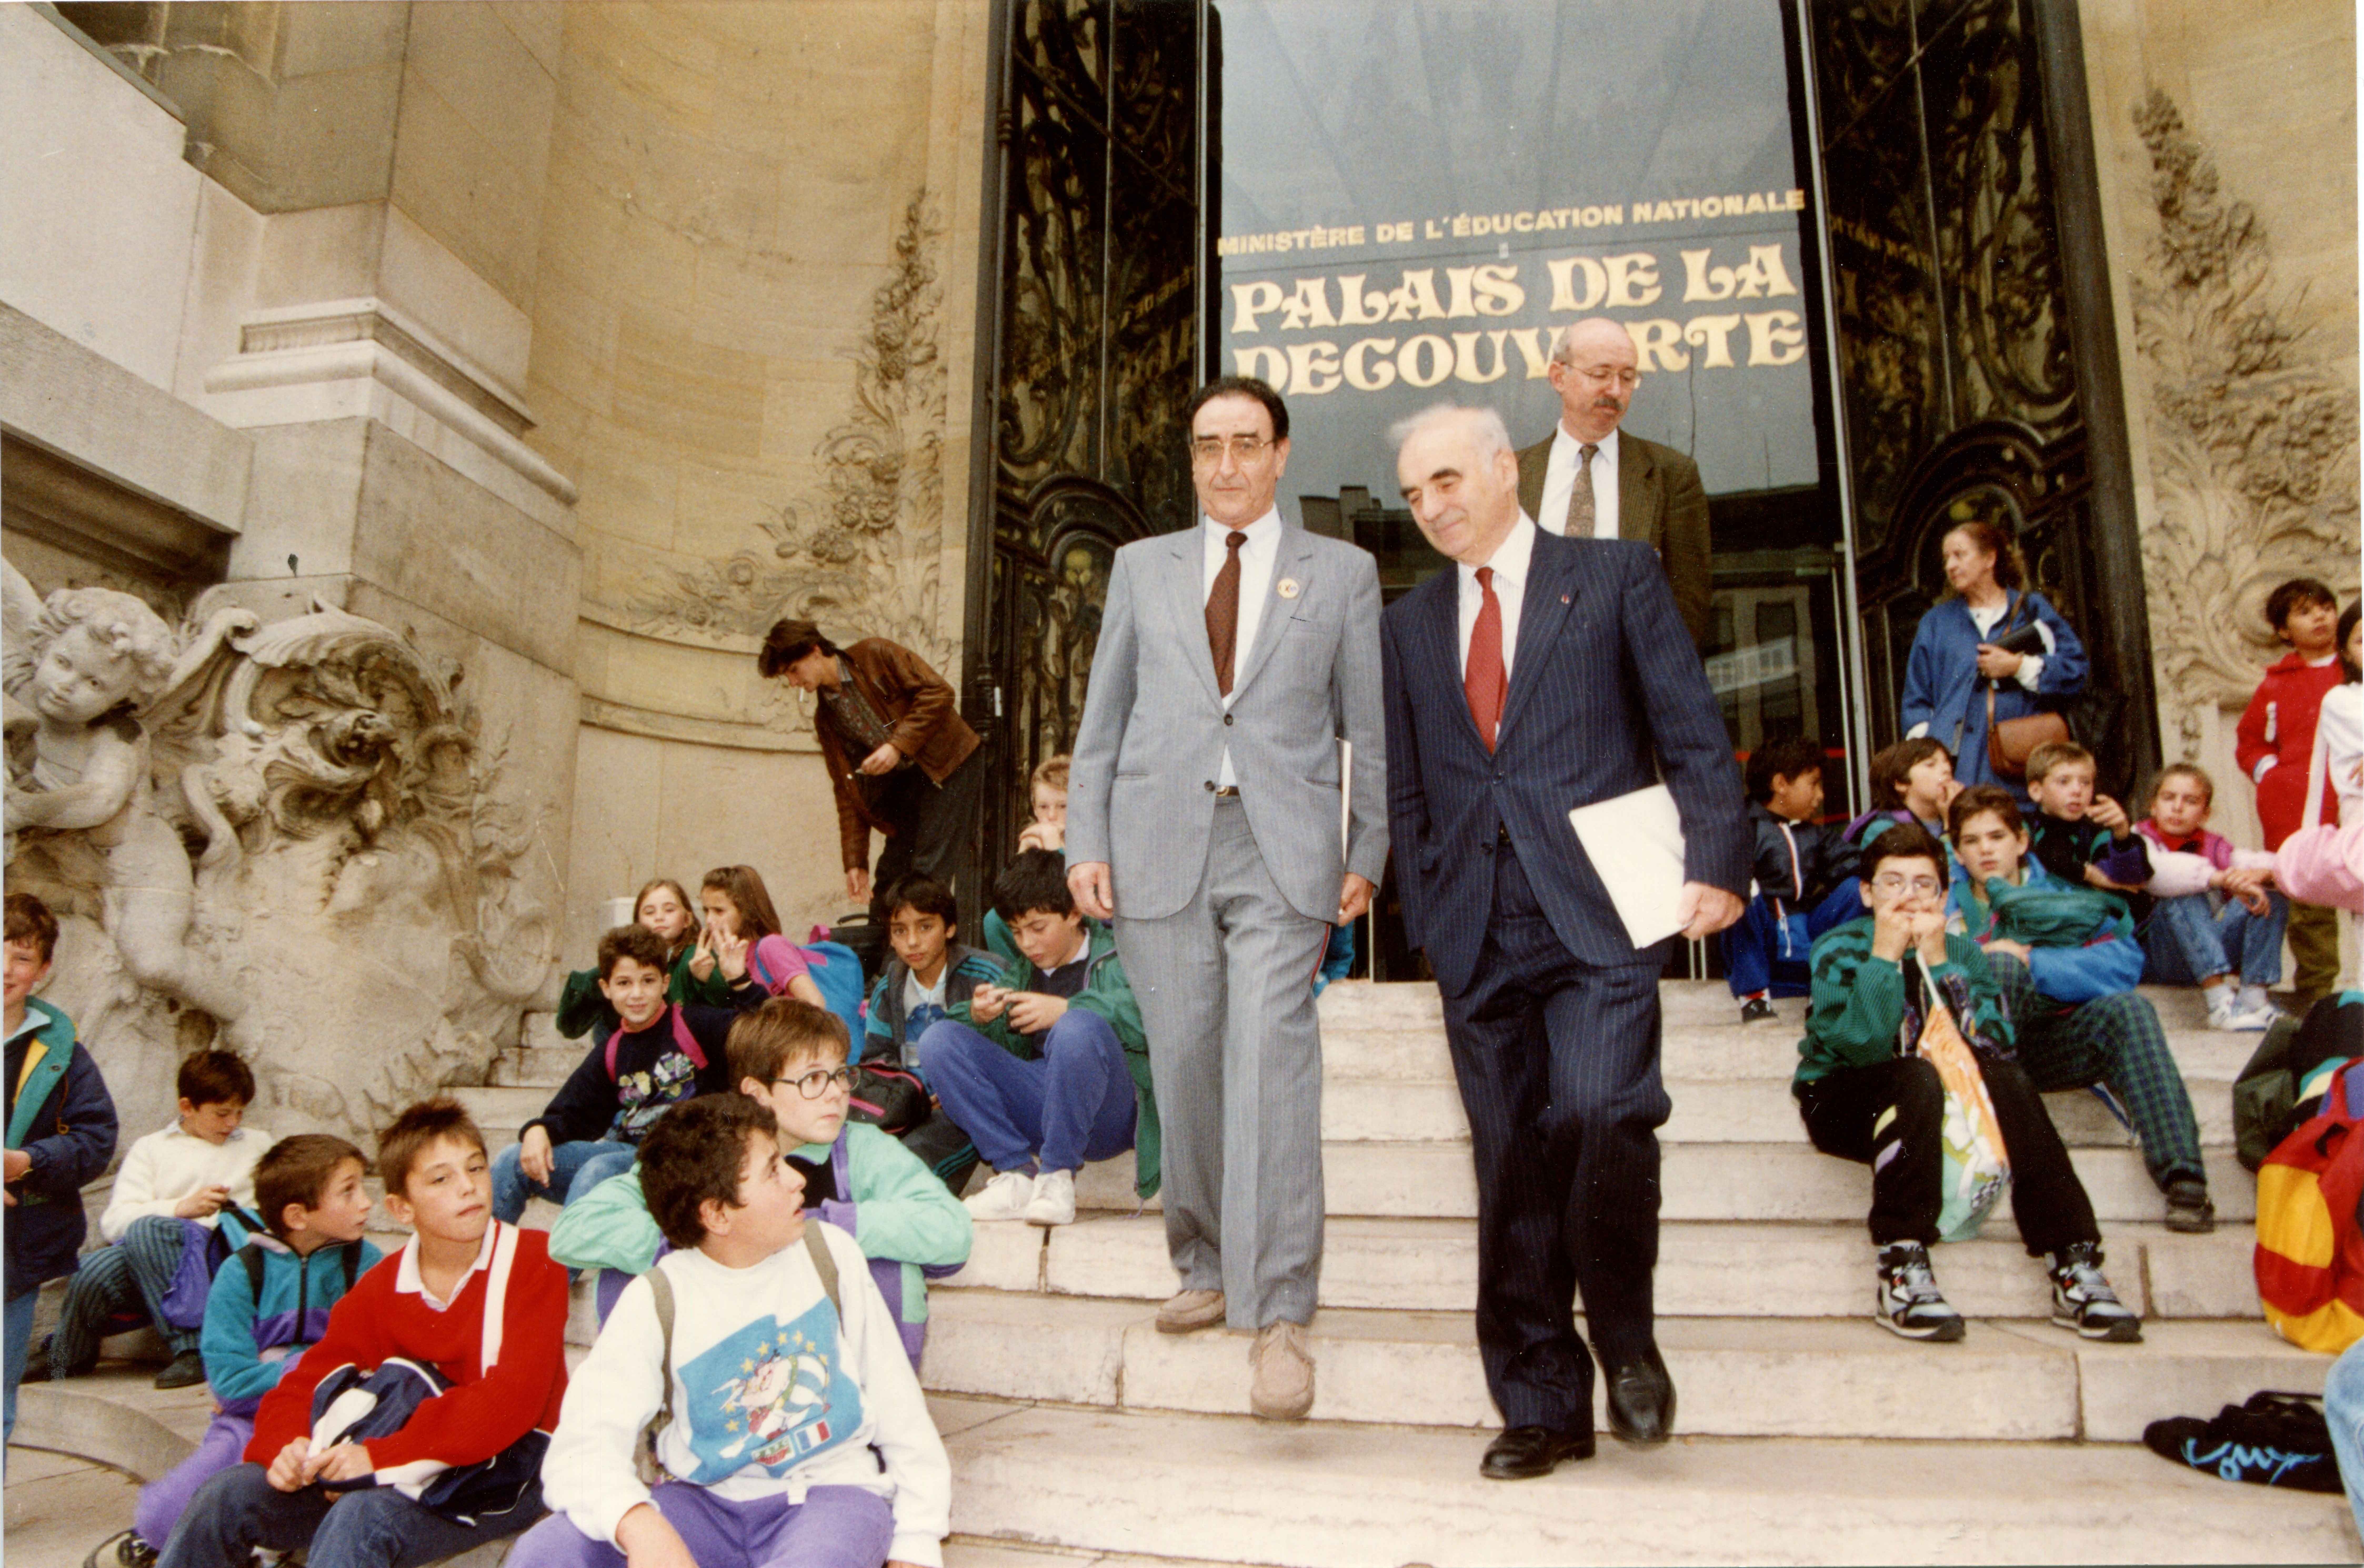  colloque « la géographie » au palais de la Découverte, 12-13 décembre 1990